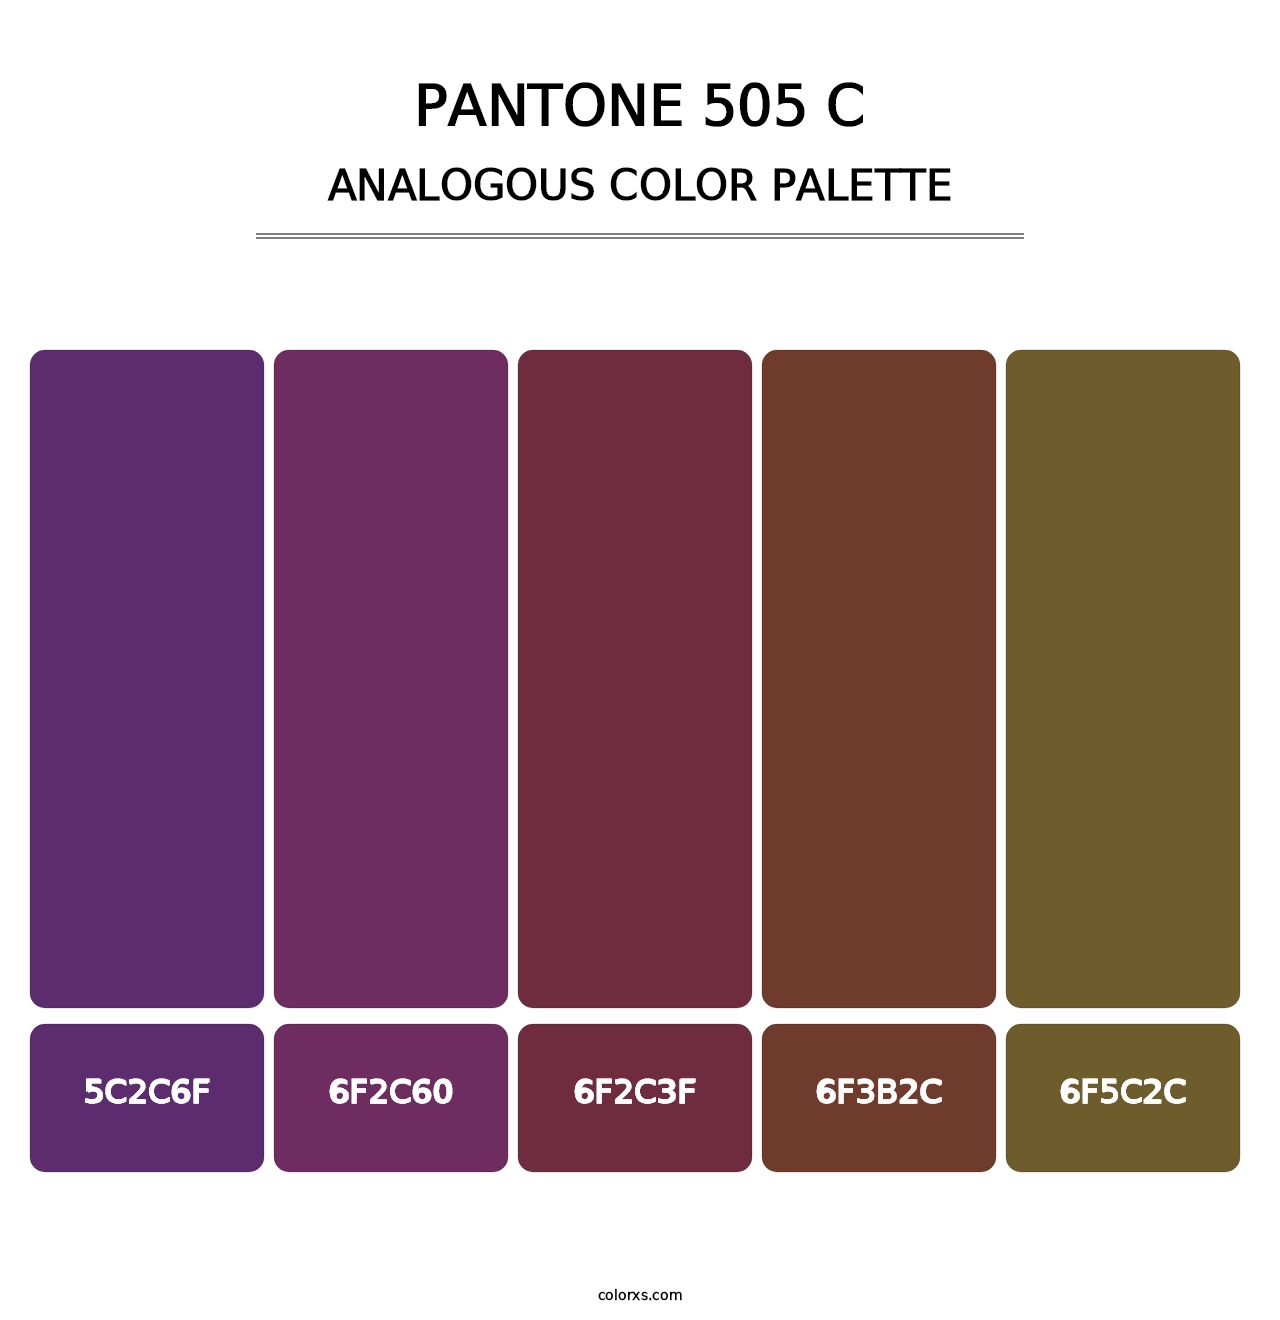 PANTONE 505 C - Analogous Color Palette